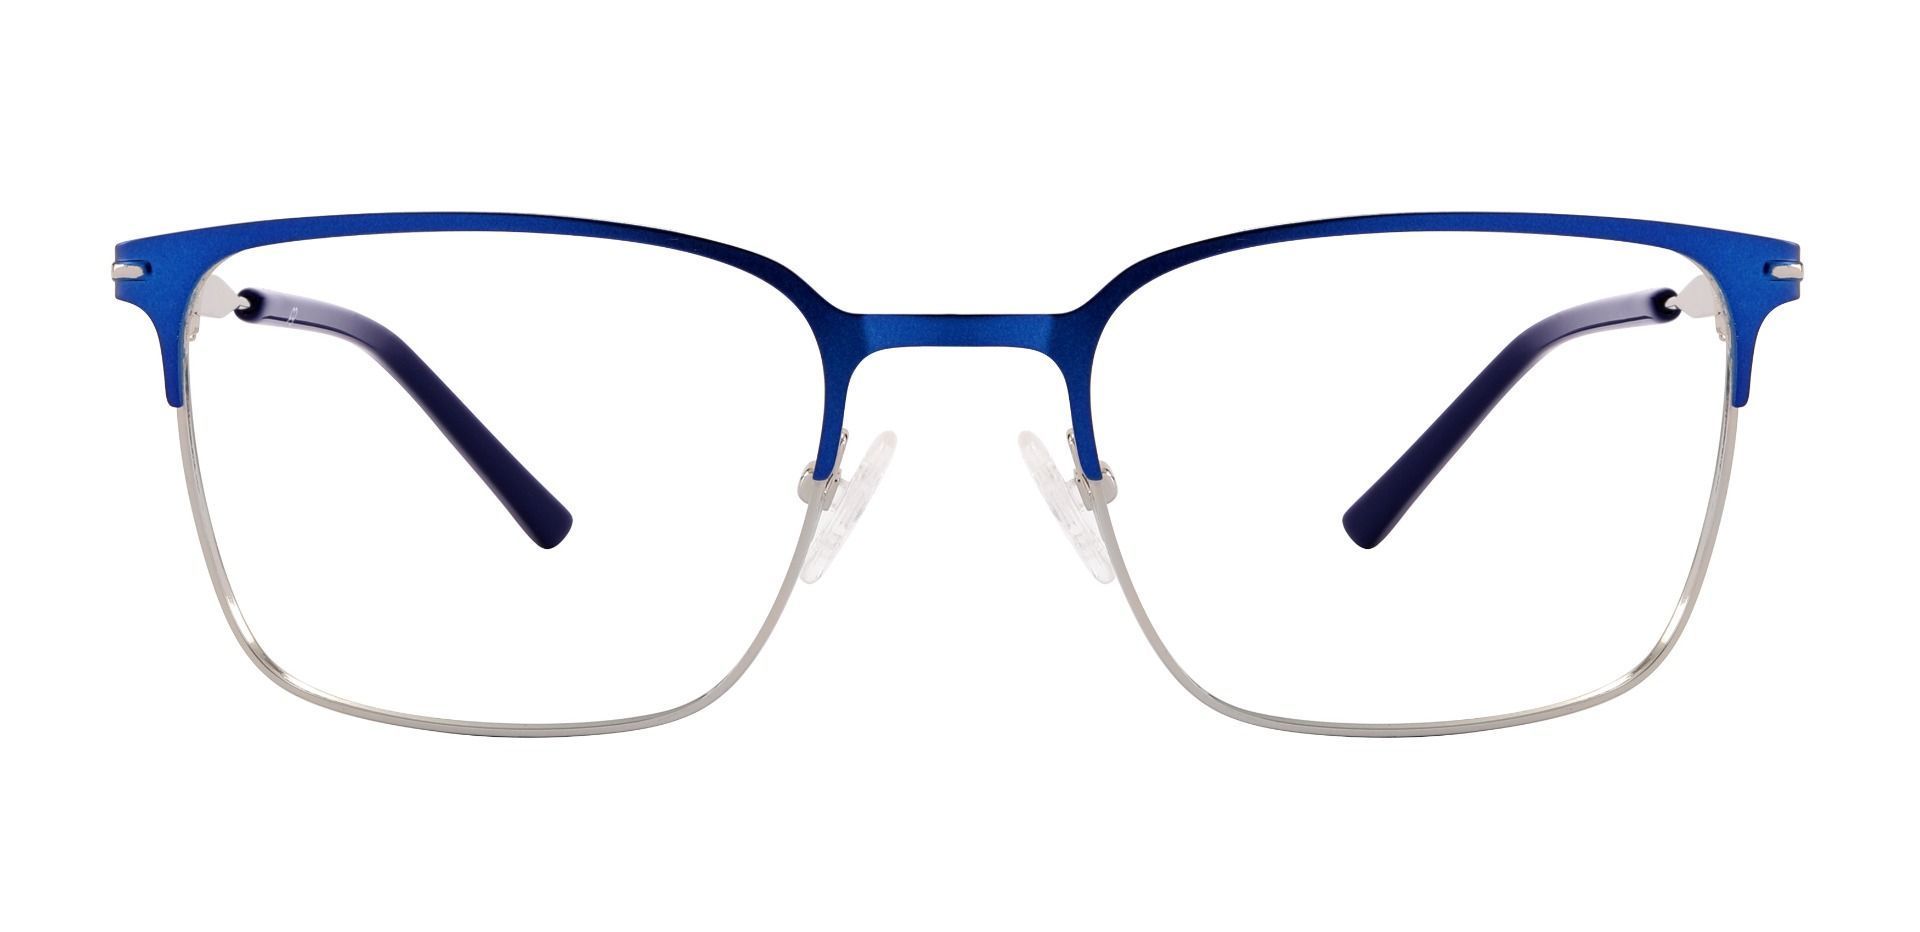 Rucker Rectangle Reading Glasses - Blue